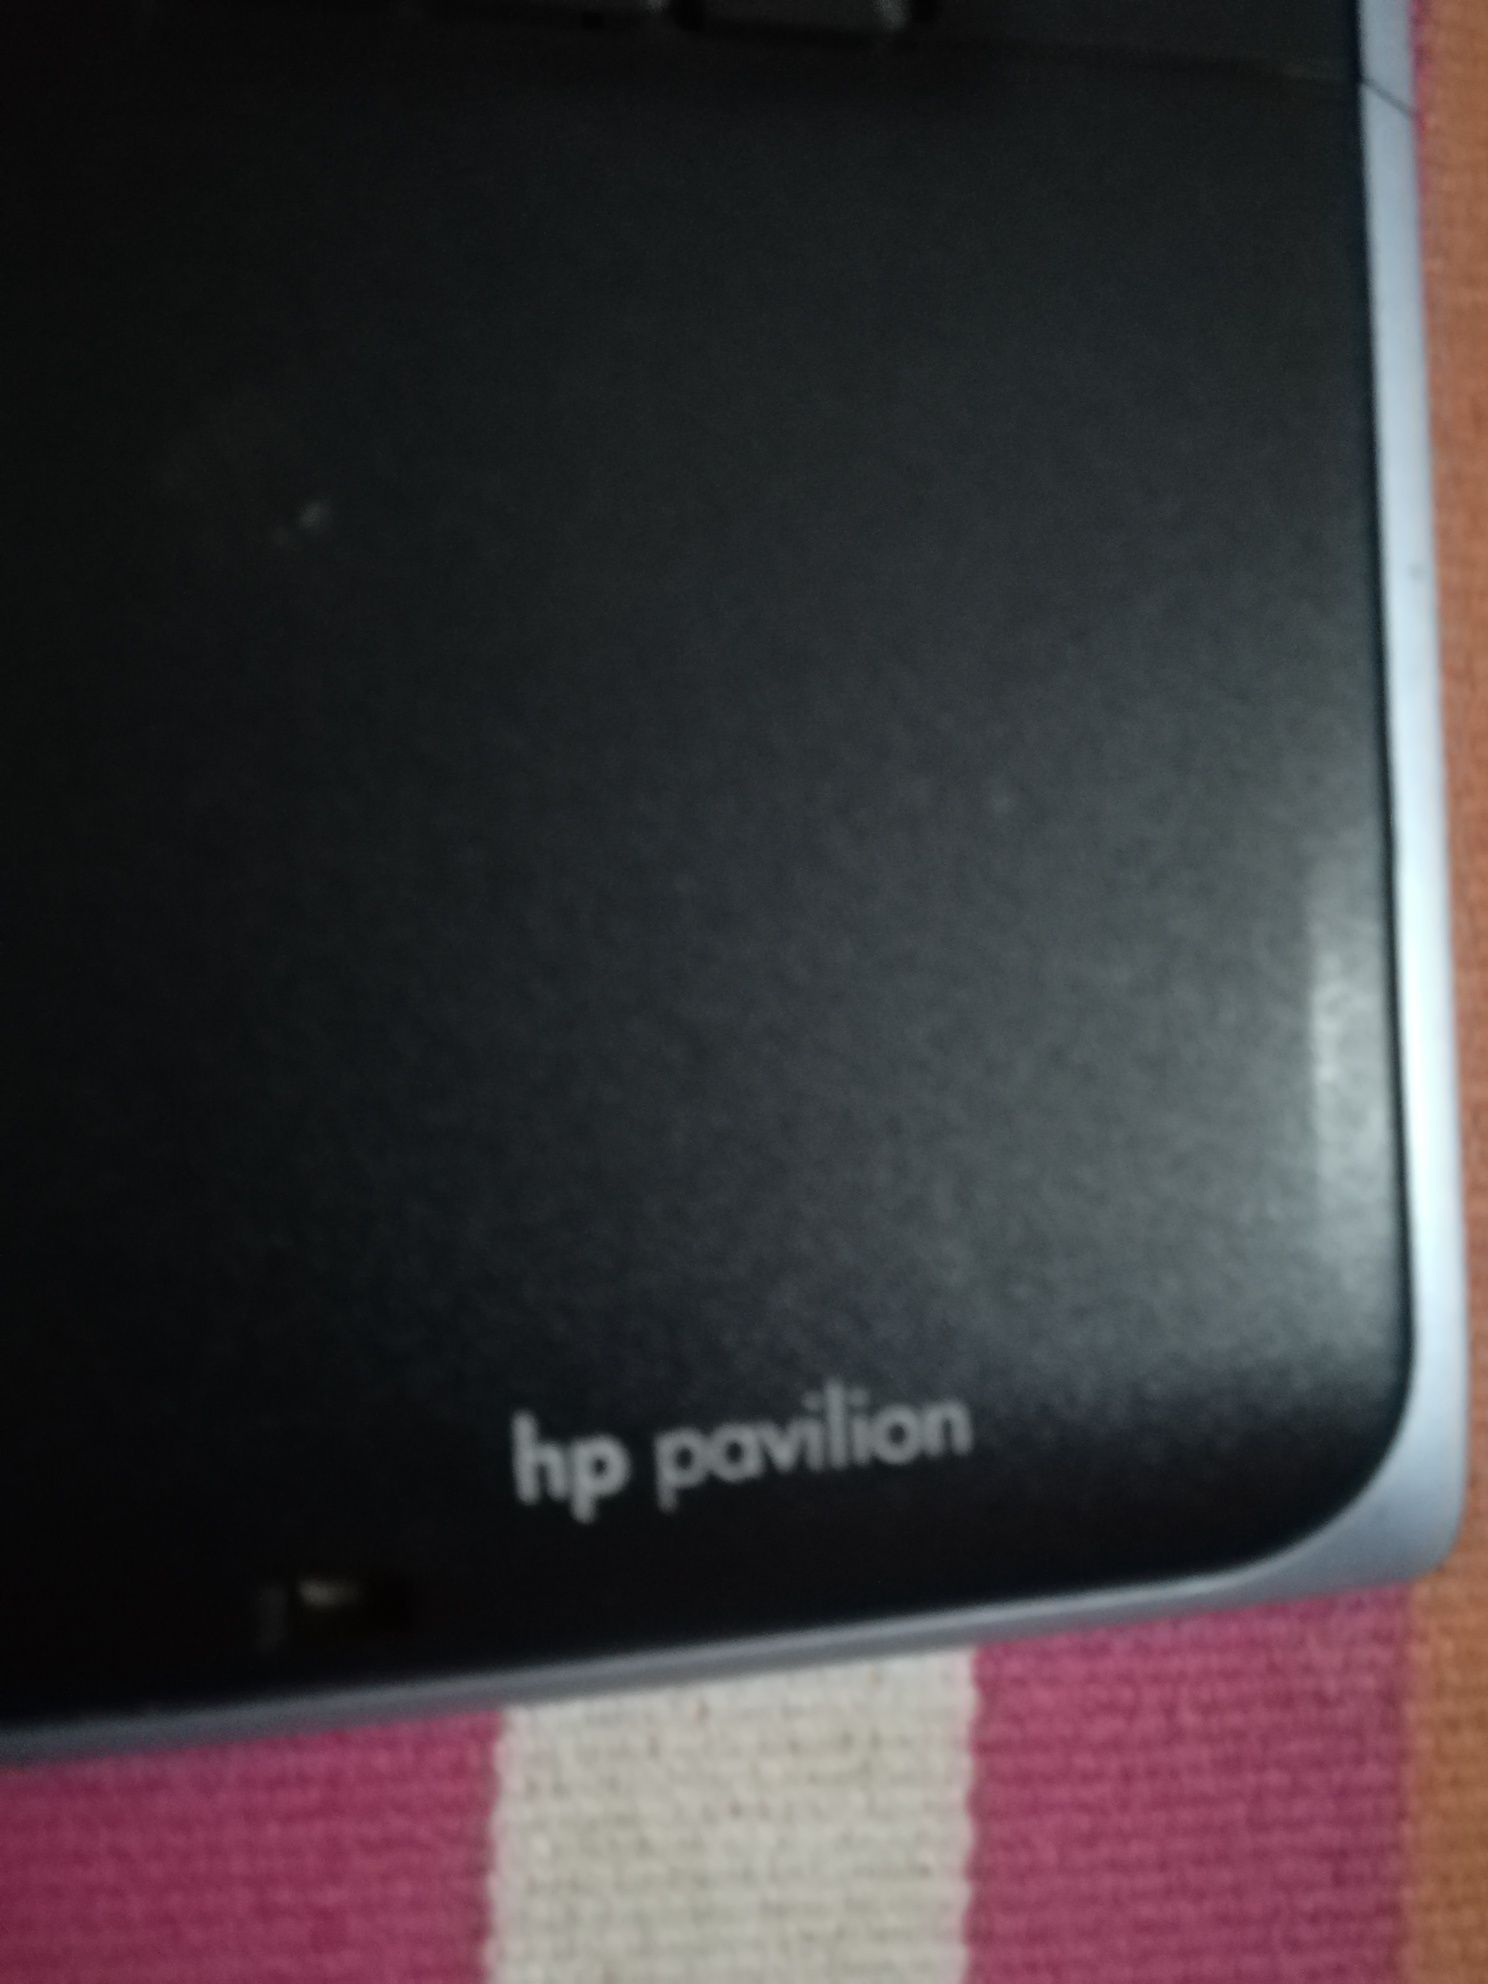 Portátil HP zt3000 para peças